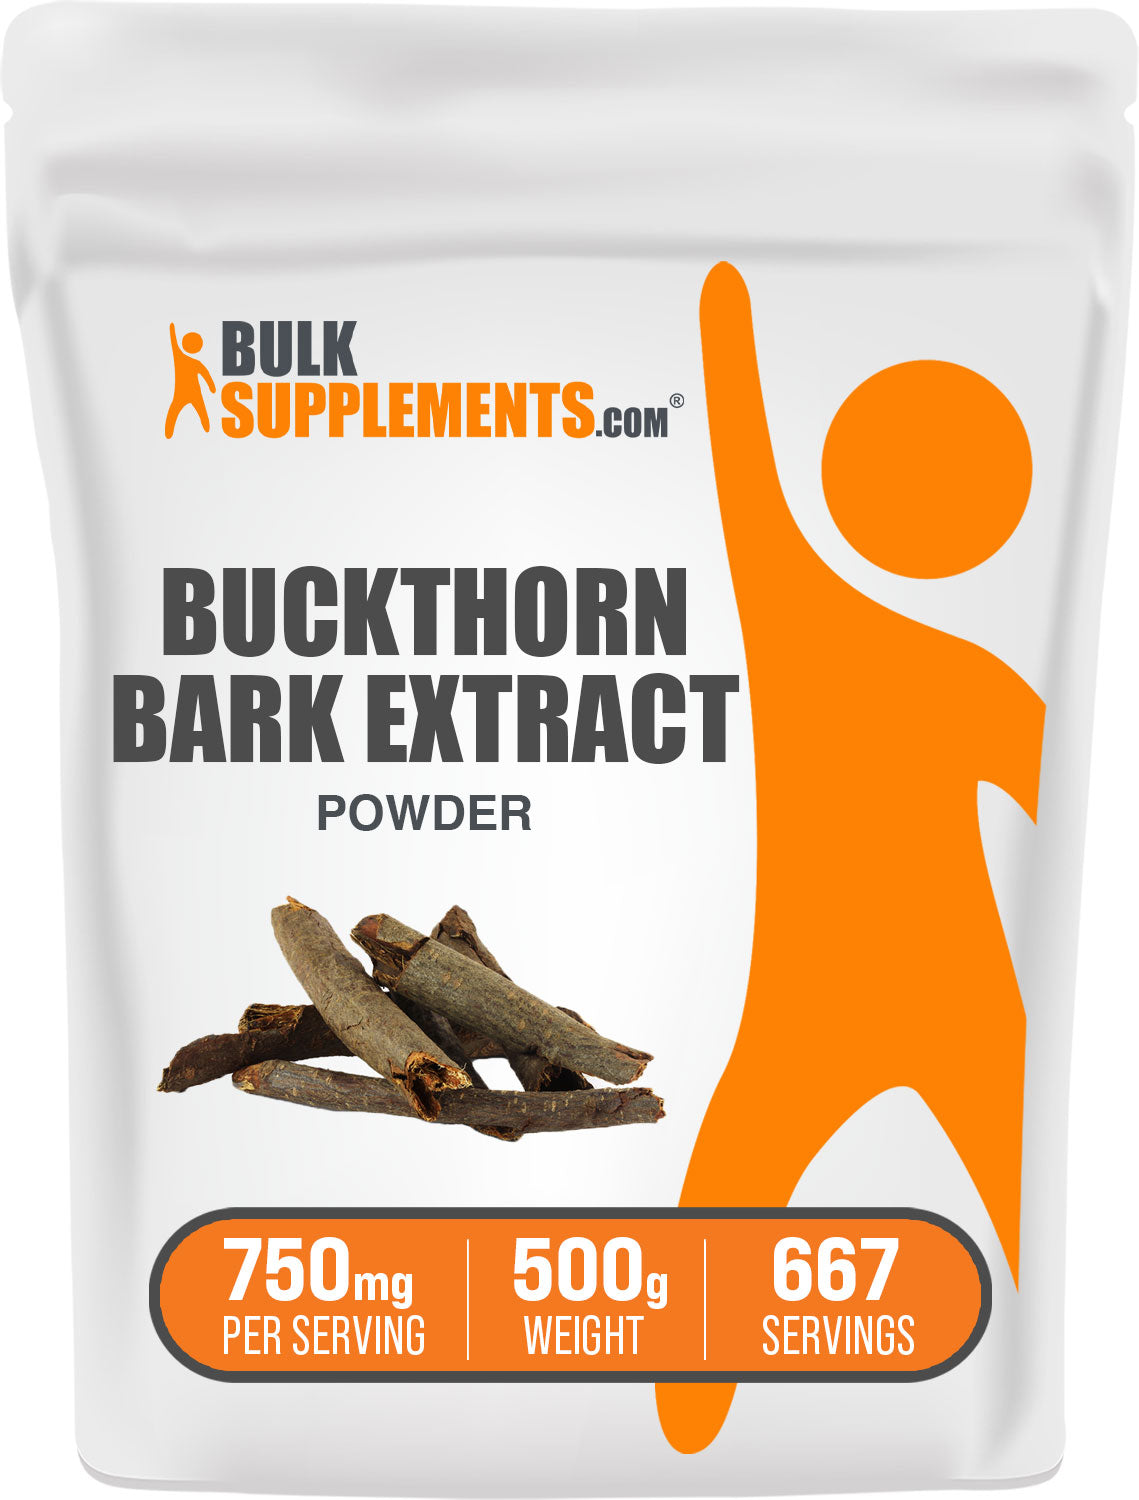 BulkSupplements.com Buckthorn Bark Extract Powder 500g Bag